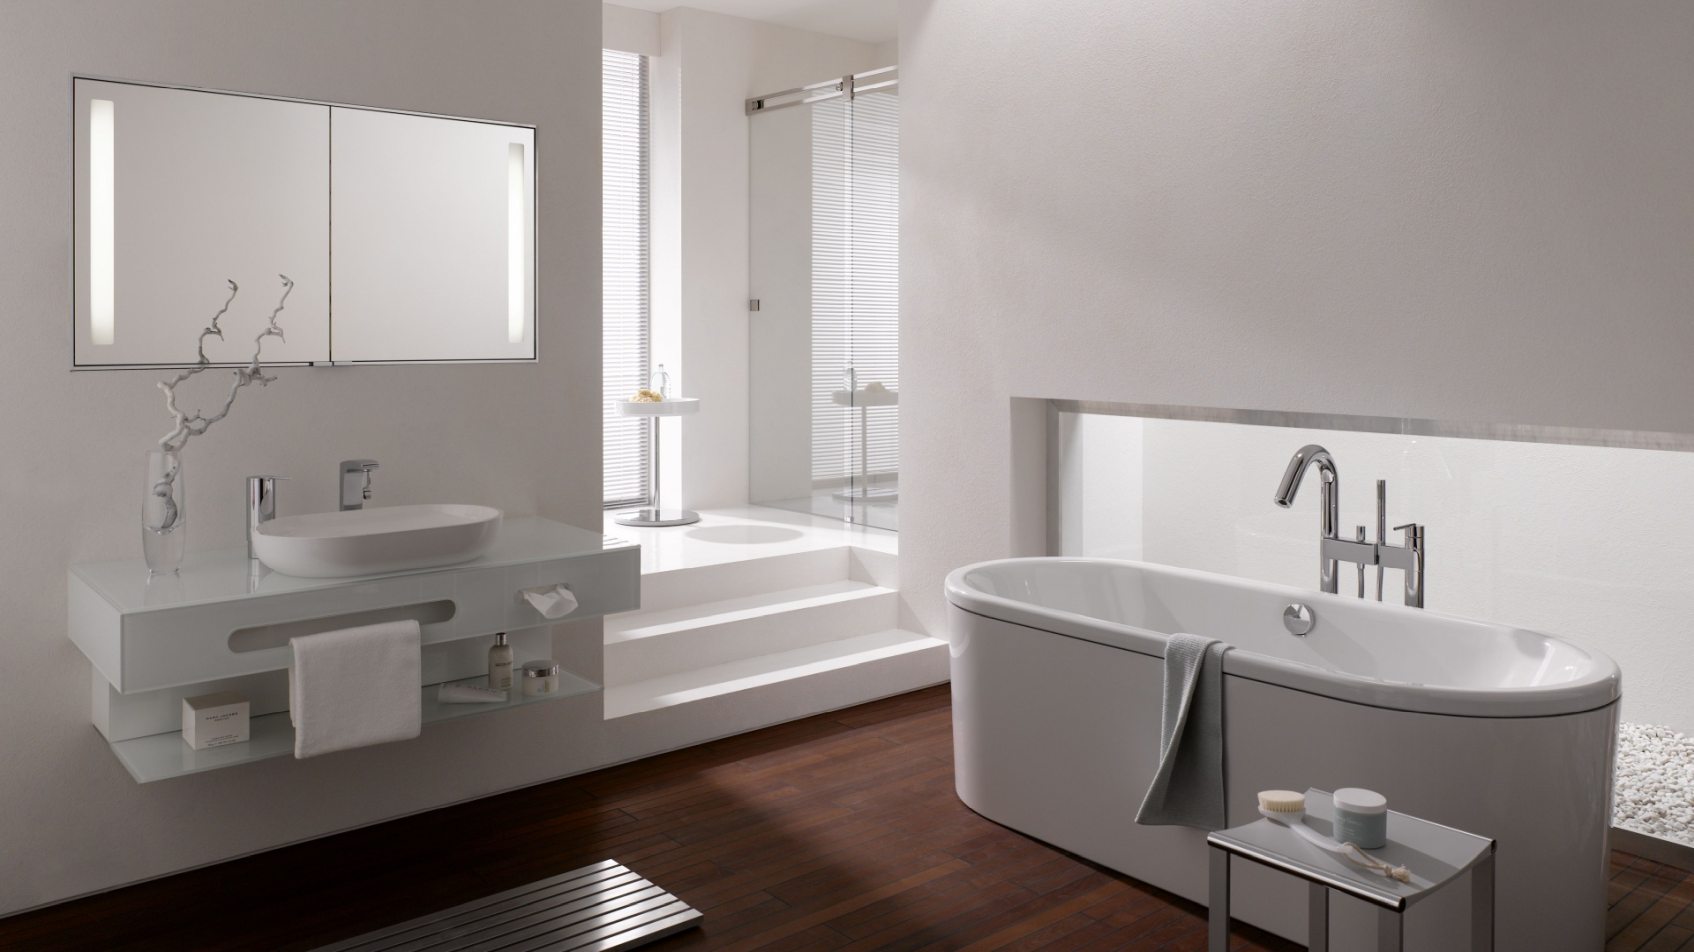 Kaldewei Centro Duo, biała łazienka, łazienka biała, łazienka w bieli, biel w łazience, wyposażenie łazienek, sklep łazienki www.lazienkarium.pl